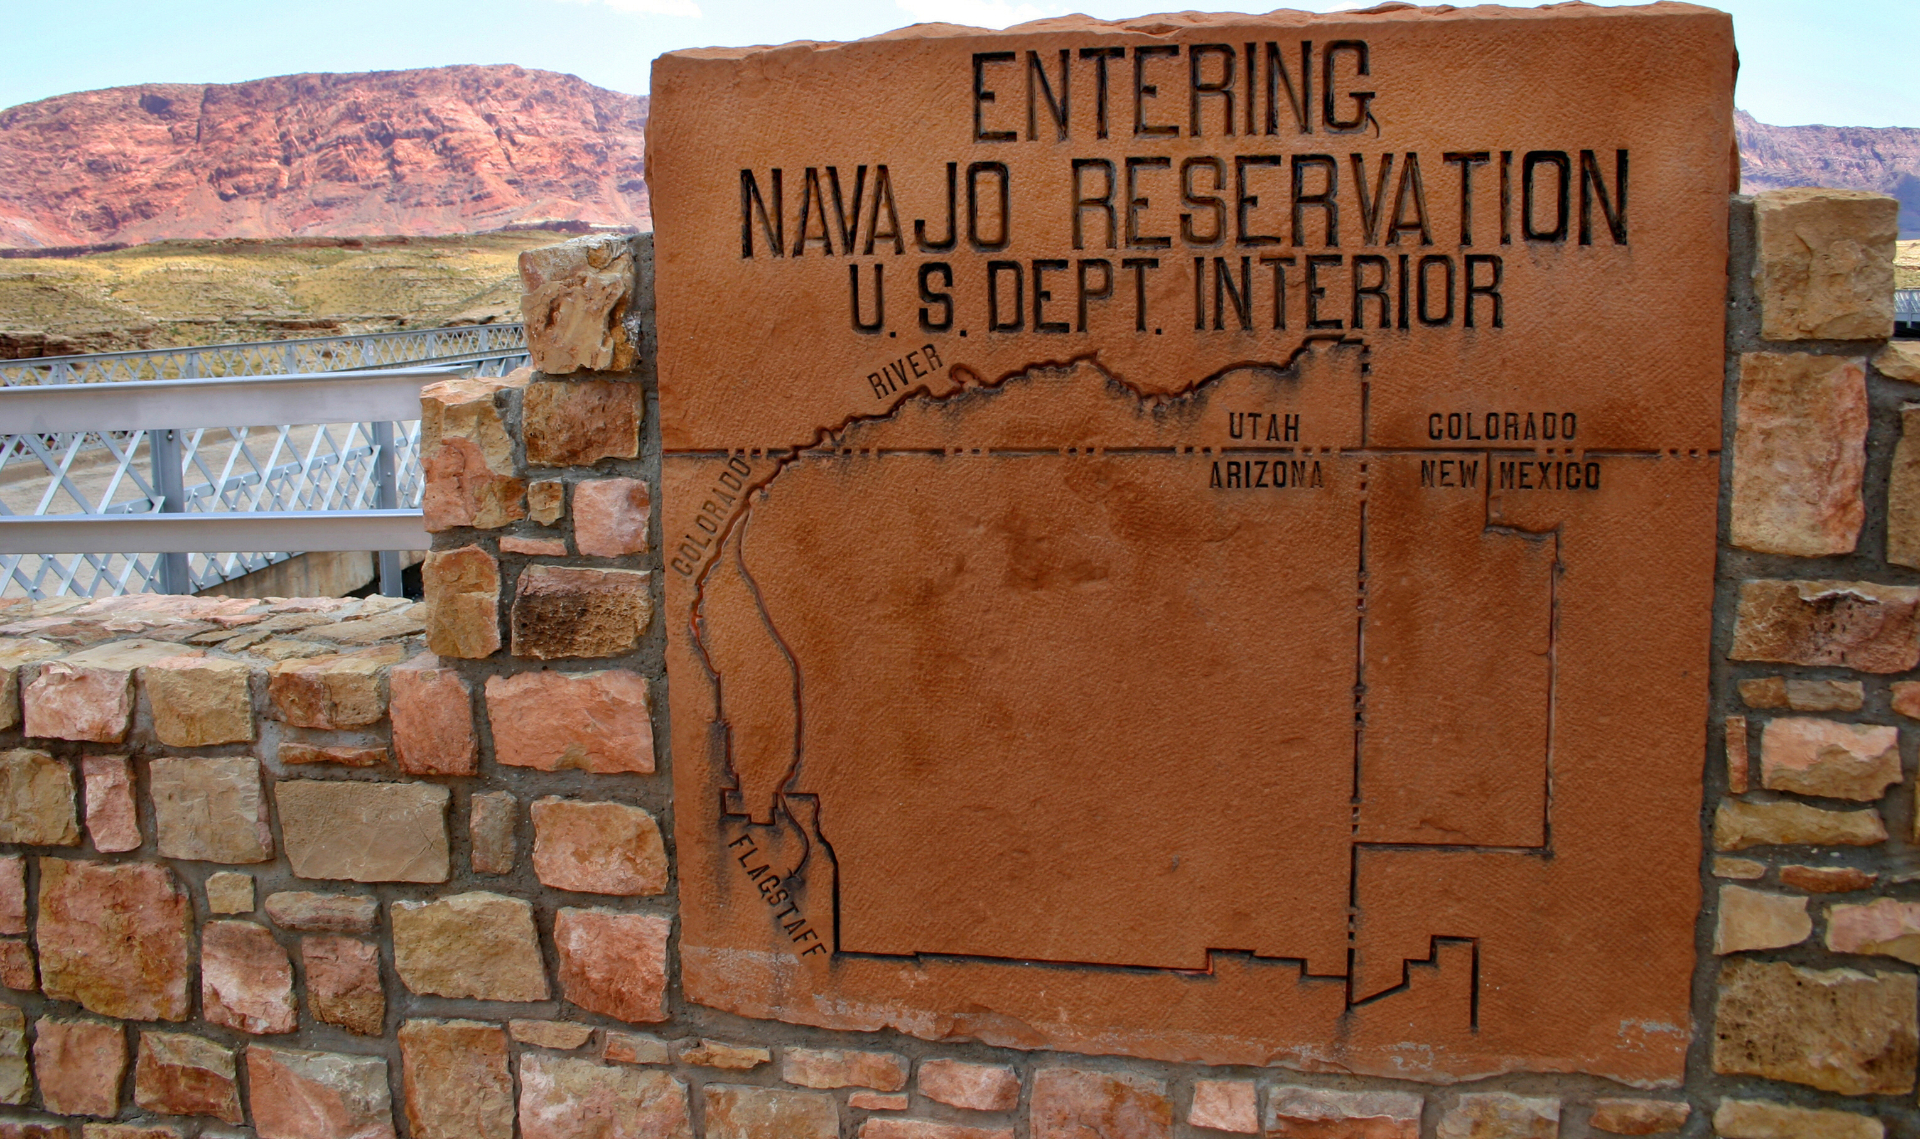 Народ навахо выступил против расширения добычи урана на территории его резервации в США